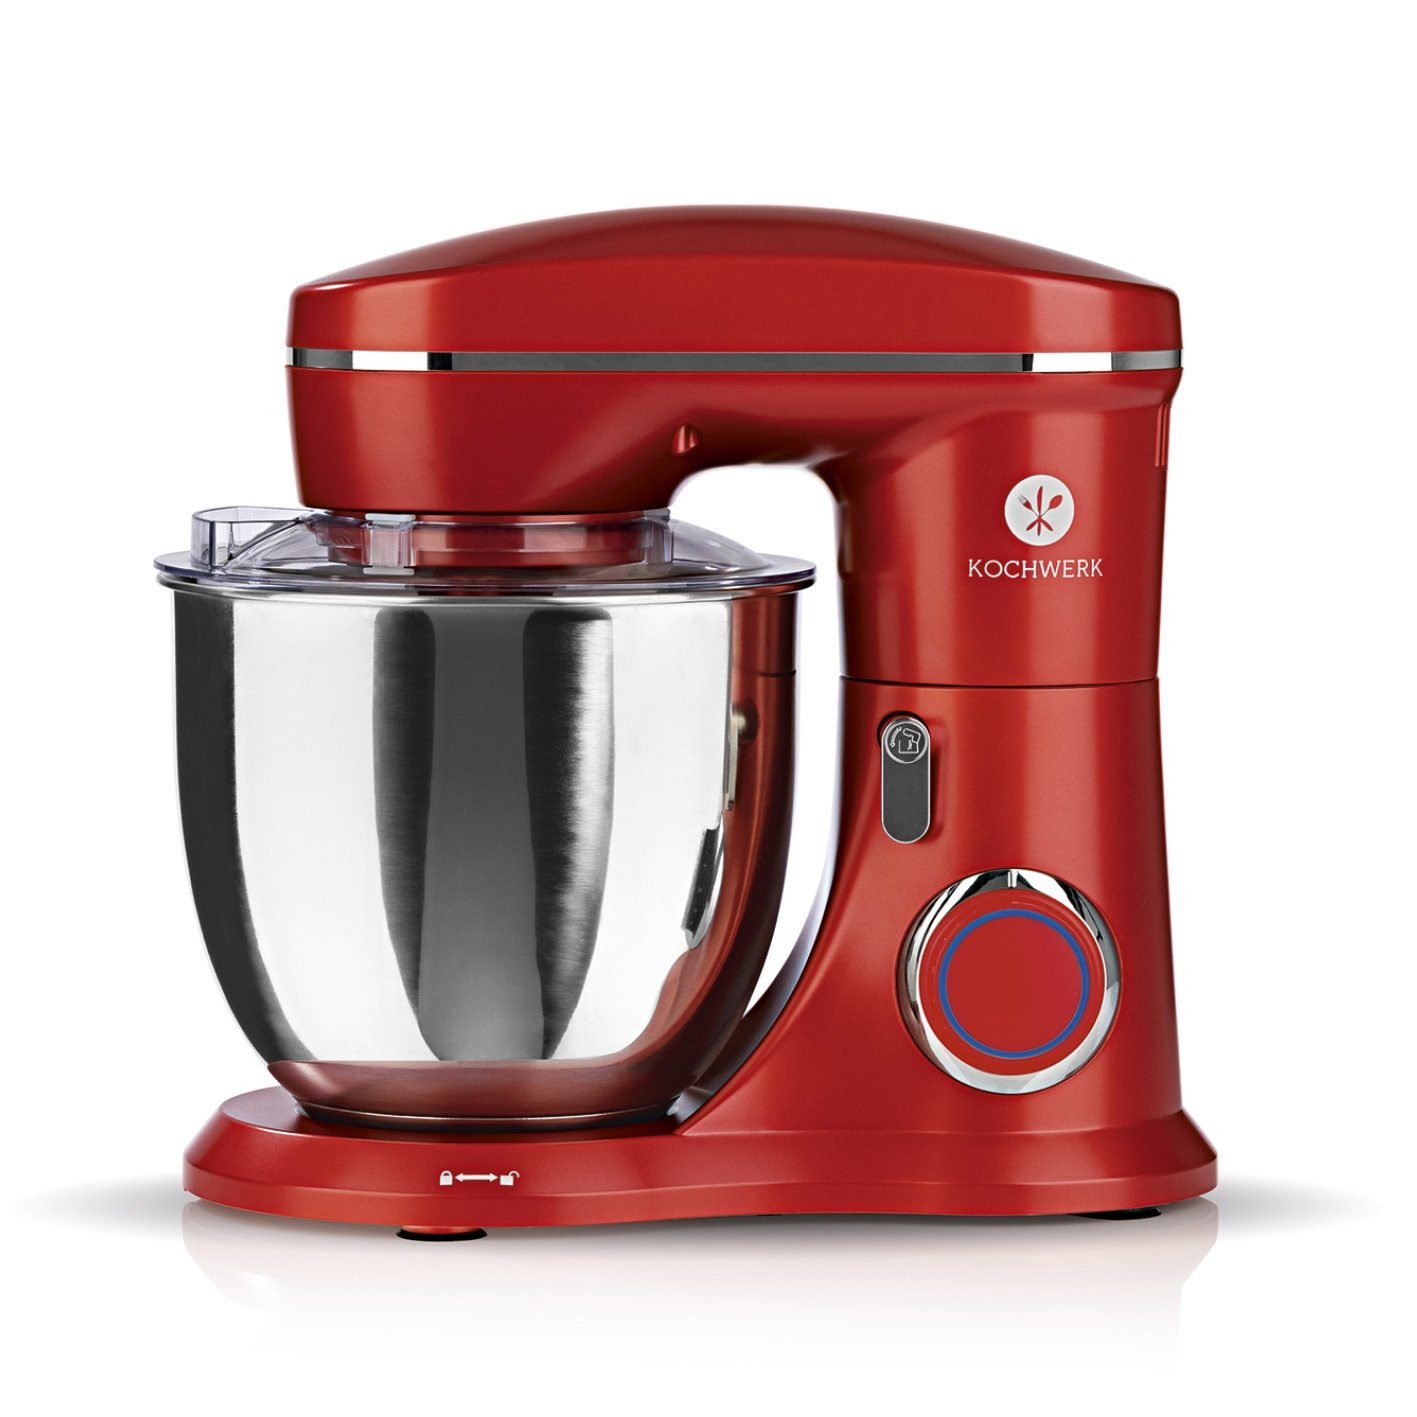 KOCHWERK Küchenmaschine Teigmixer - Rührgerät - 5,5 Liter - rot online  kaufen | OTTO